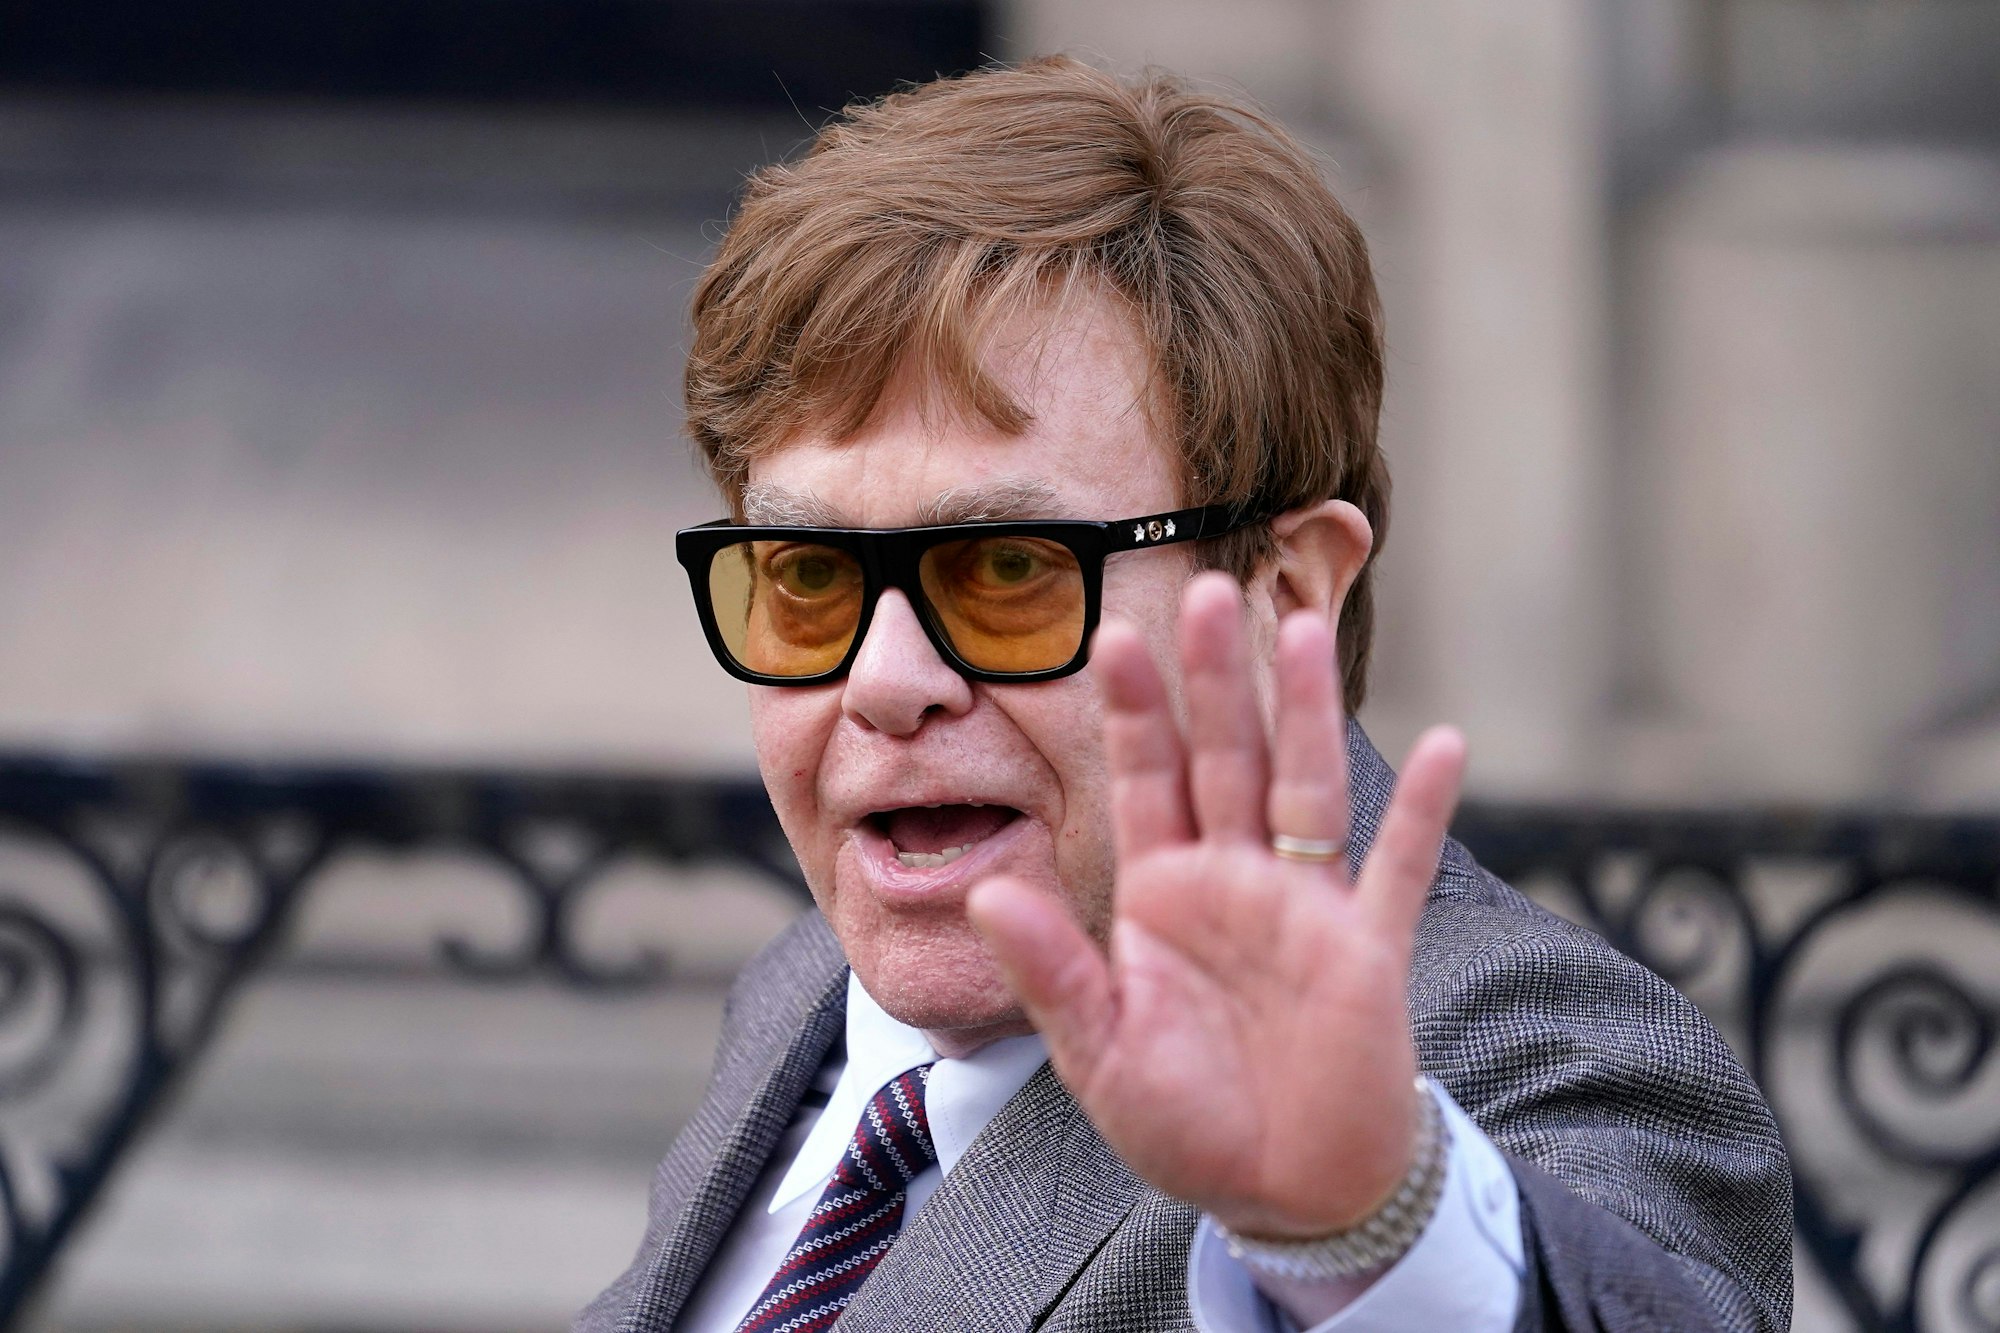 Elton John, britischer Sänger, winkt, als er das Royal Courts Of Justice im Zentrum Londons nach einer Anhörung verlässt.